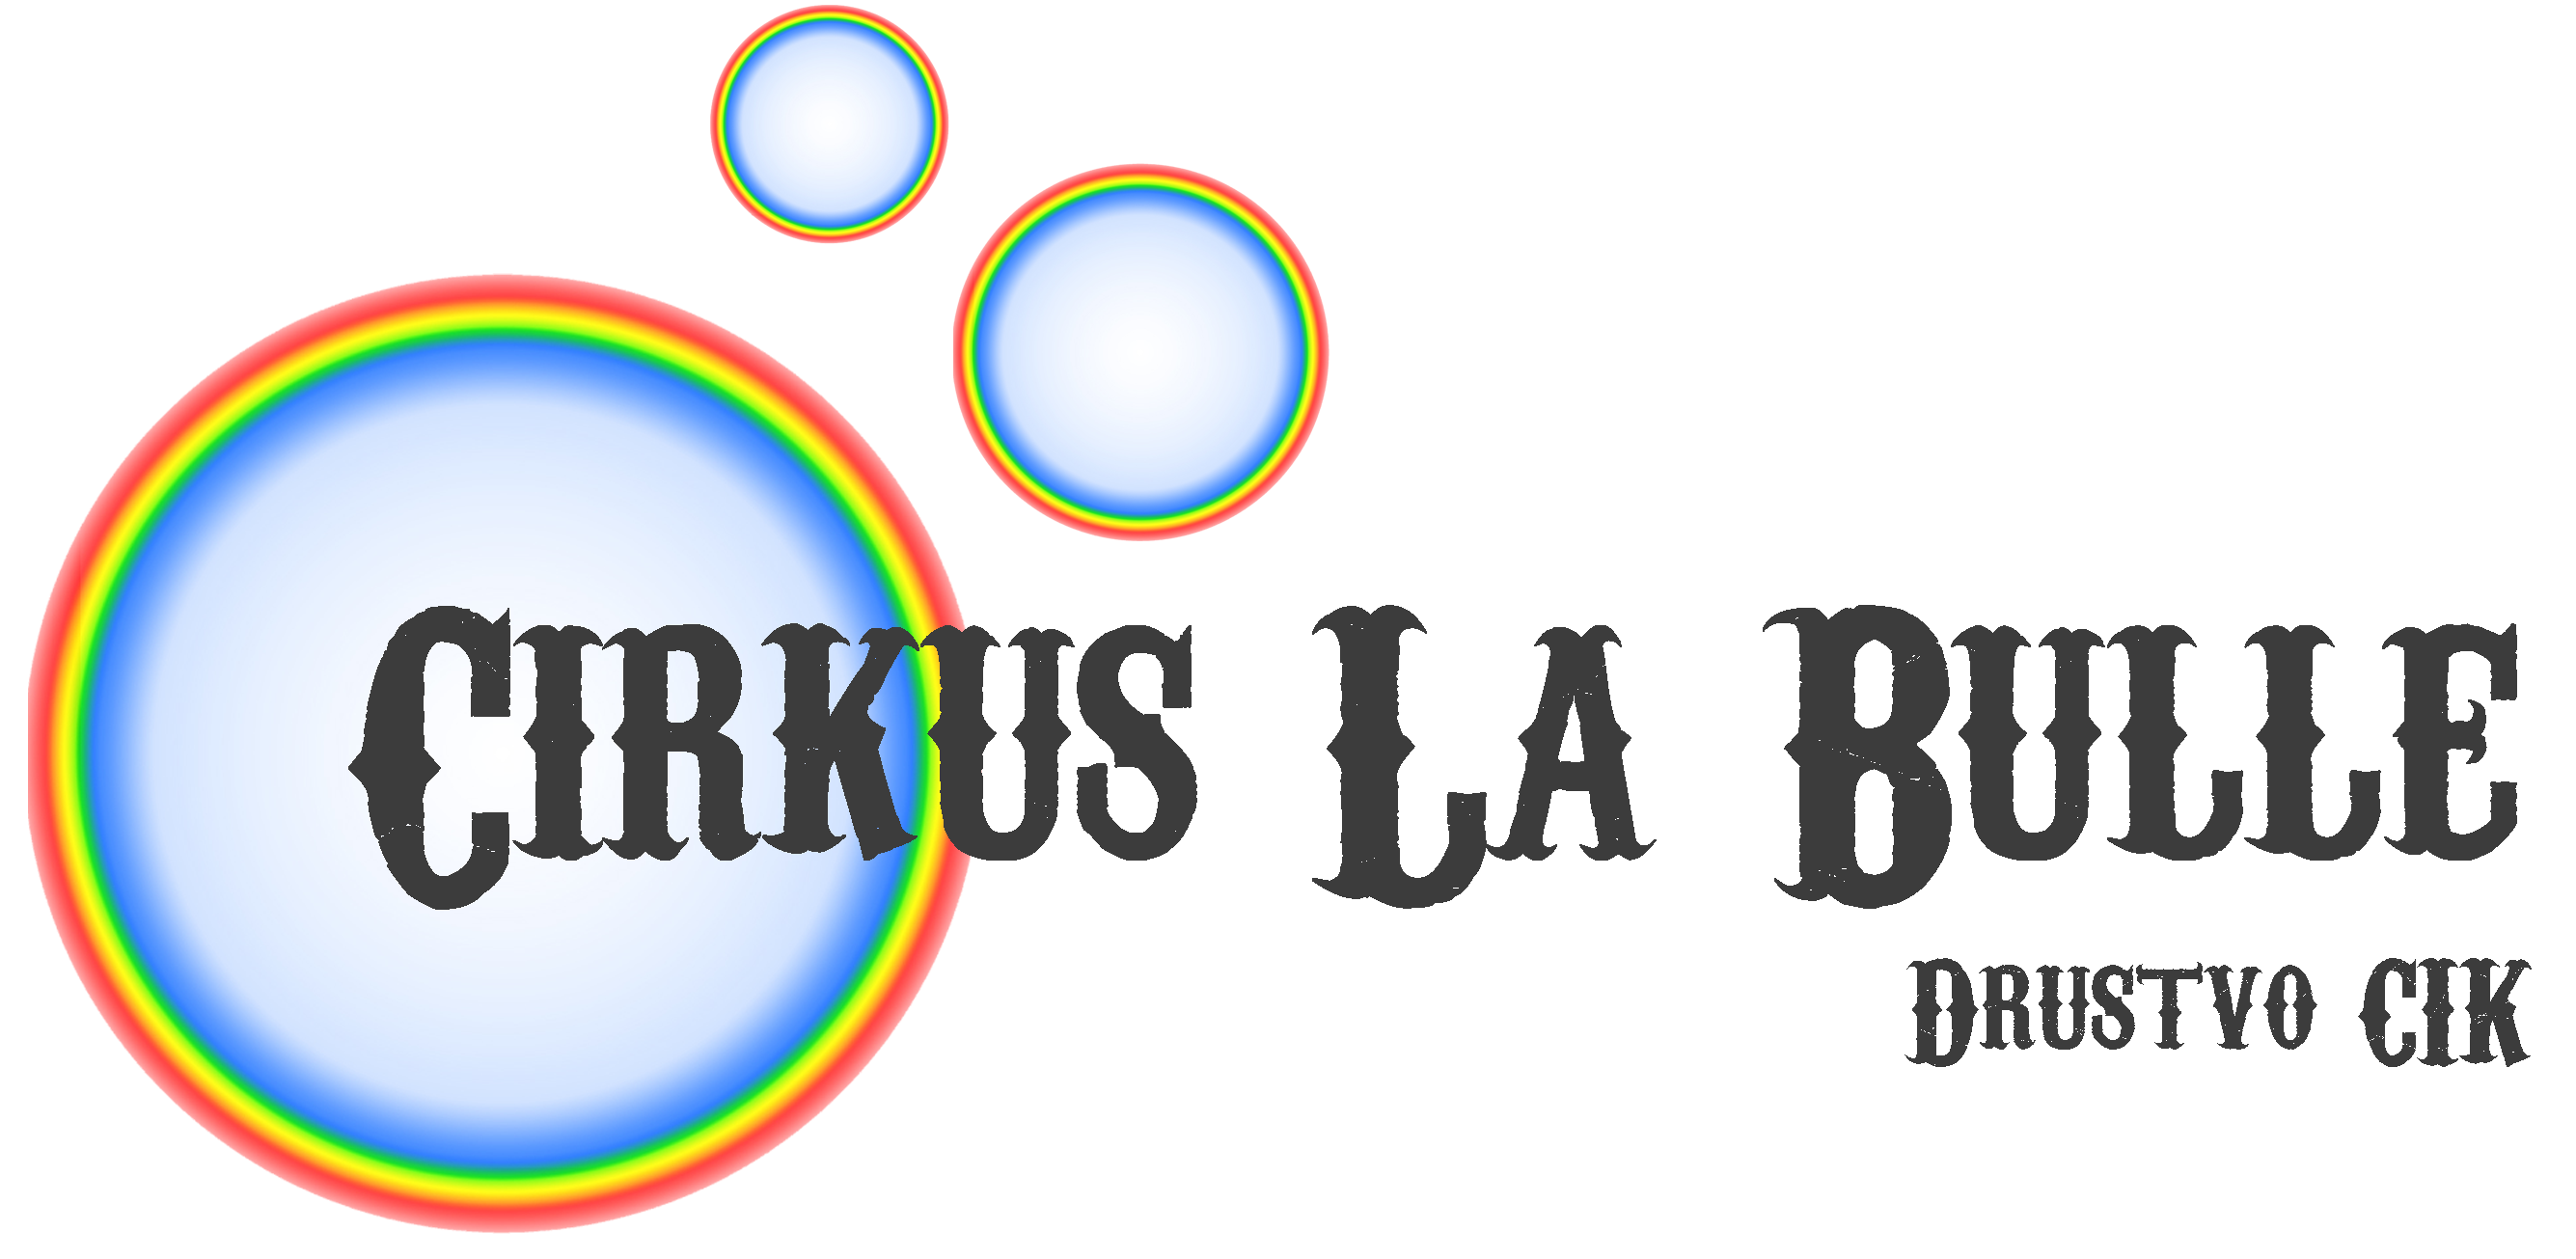 3.logo cirkus la bulle 2022(1).png